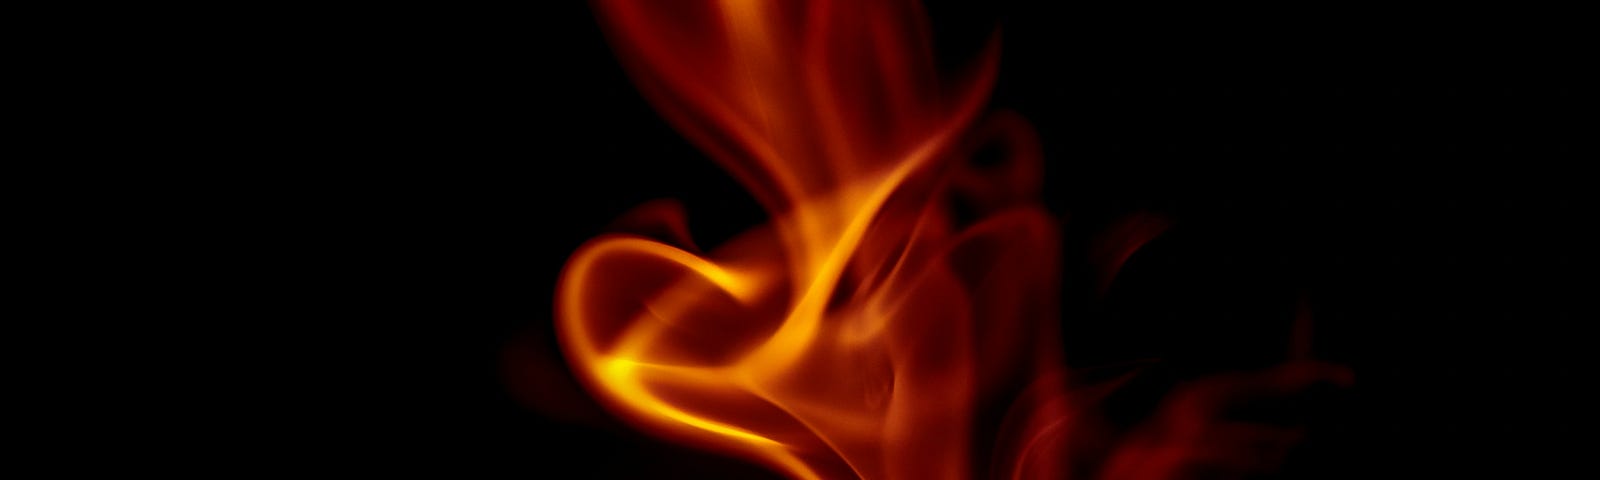 Flame Ignited — https://cdn-images-1.medium.com/max/1000/0*LMuZNEBegW9VhS6B